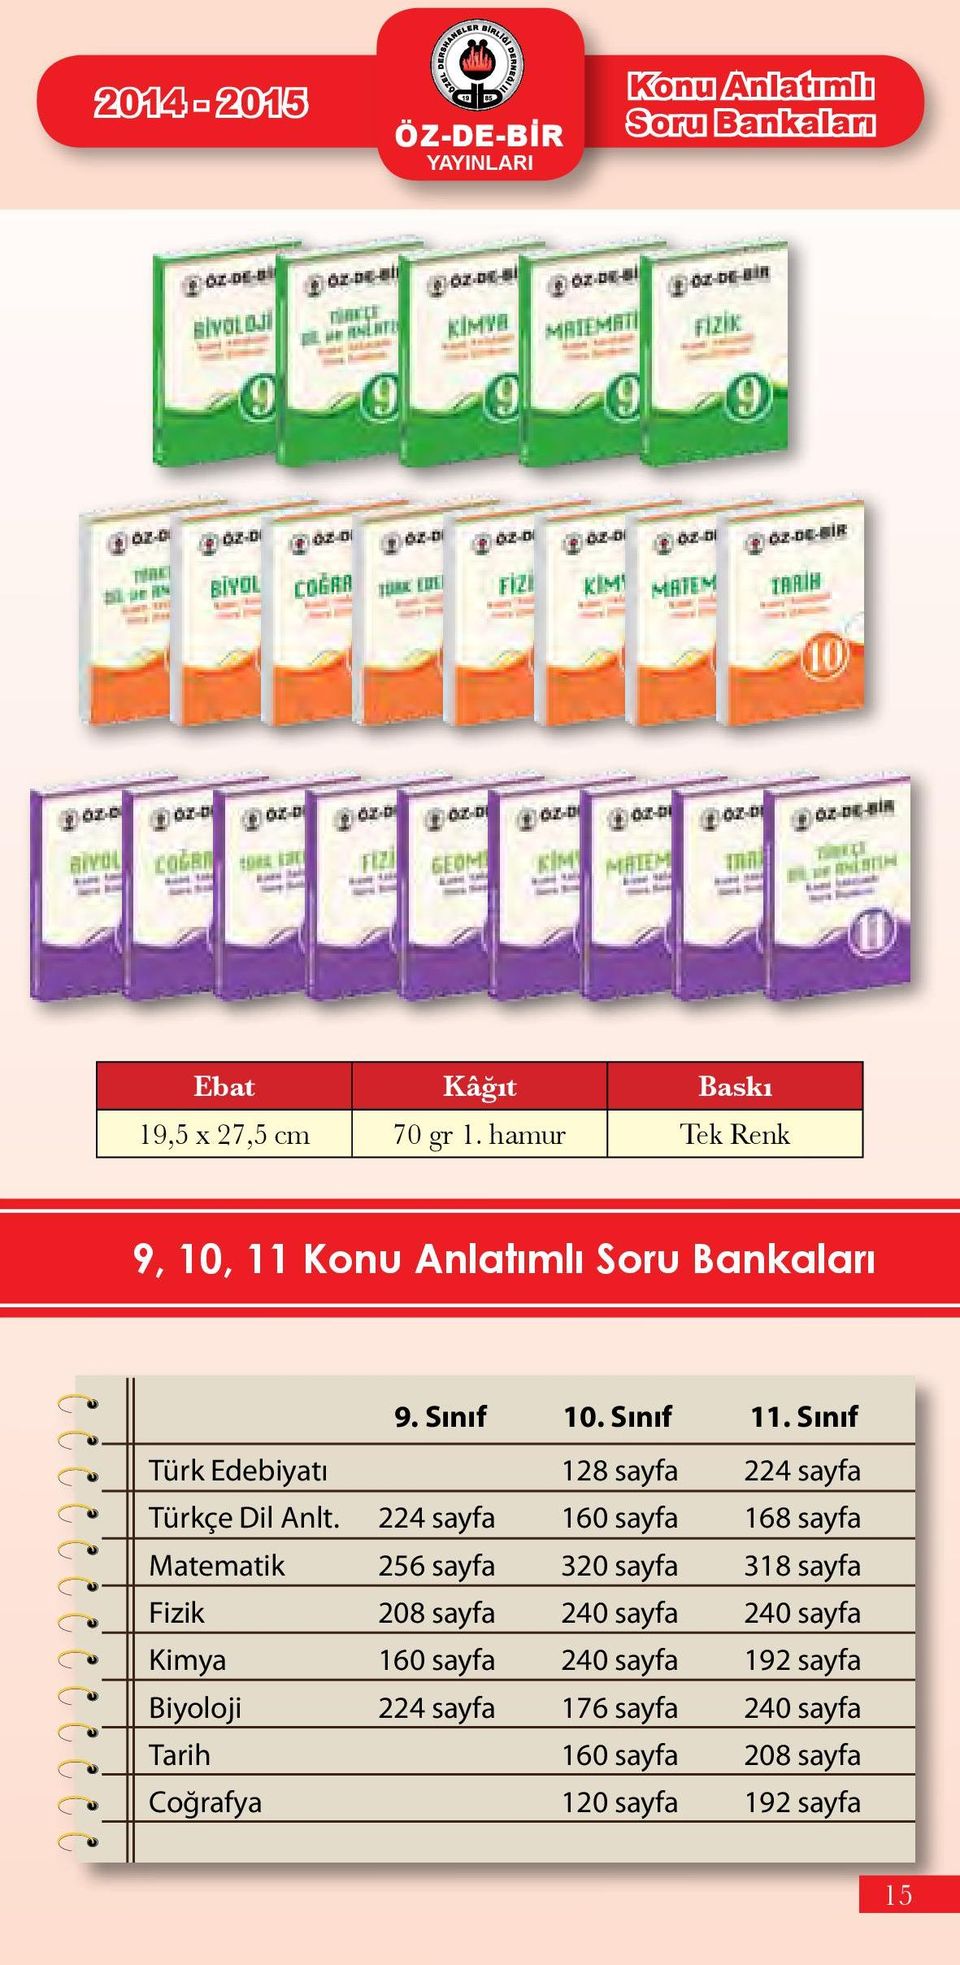 Sınıf Türk Edebiyatı 128 sayfa 224 sayfa Türkçe Dil Anlt.